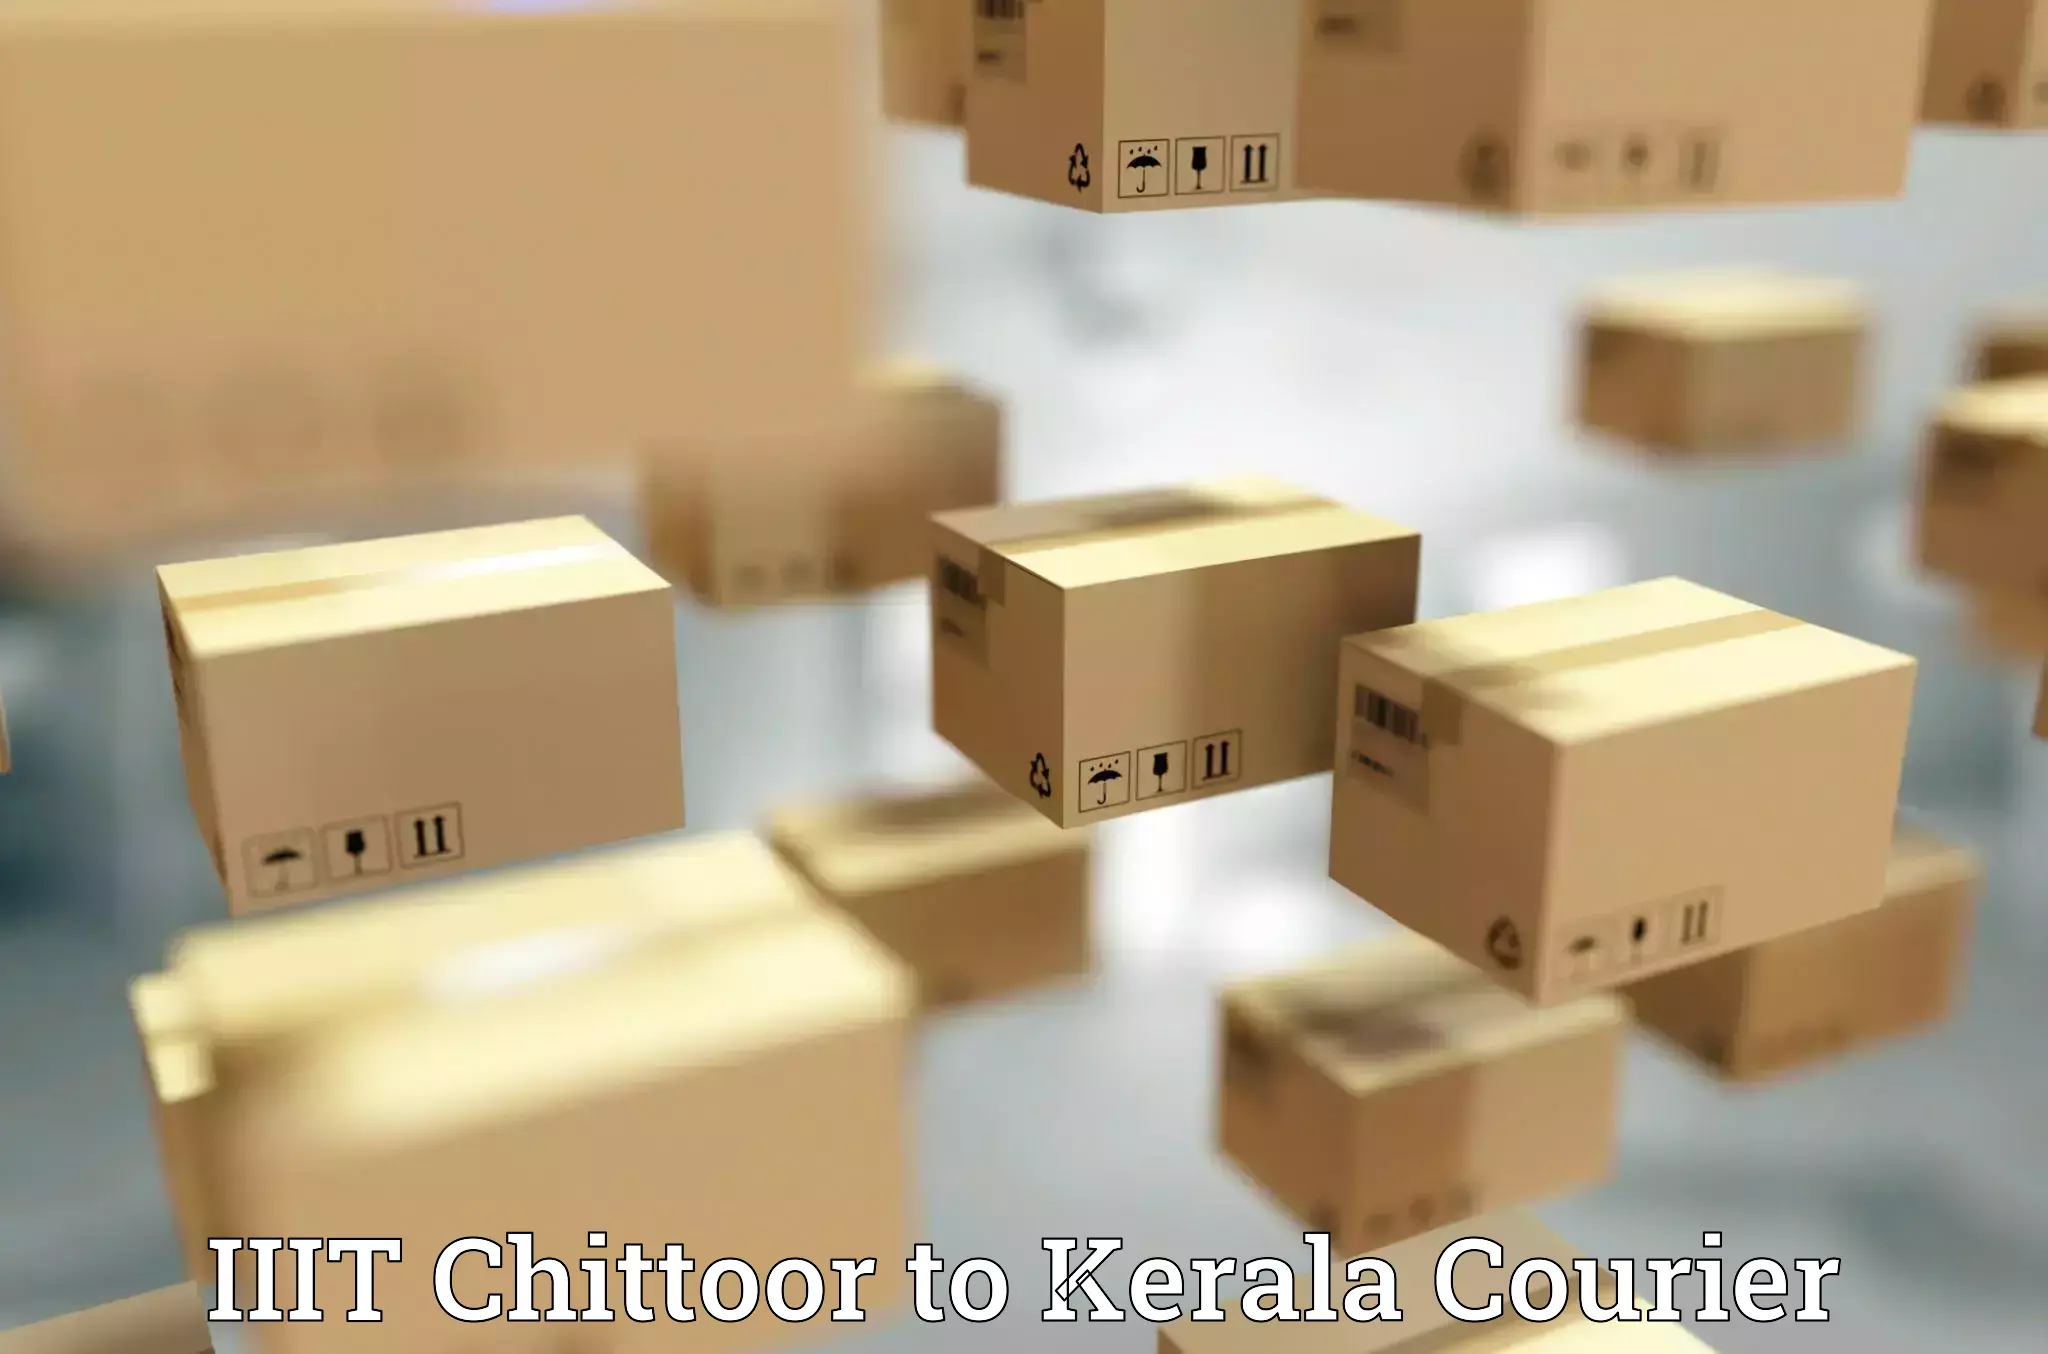 Courier service efficiency IIIT Chittoor to Kerala